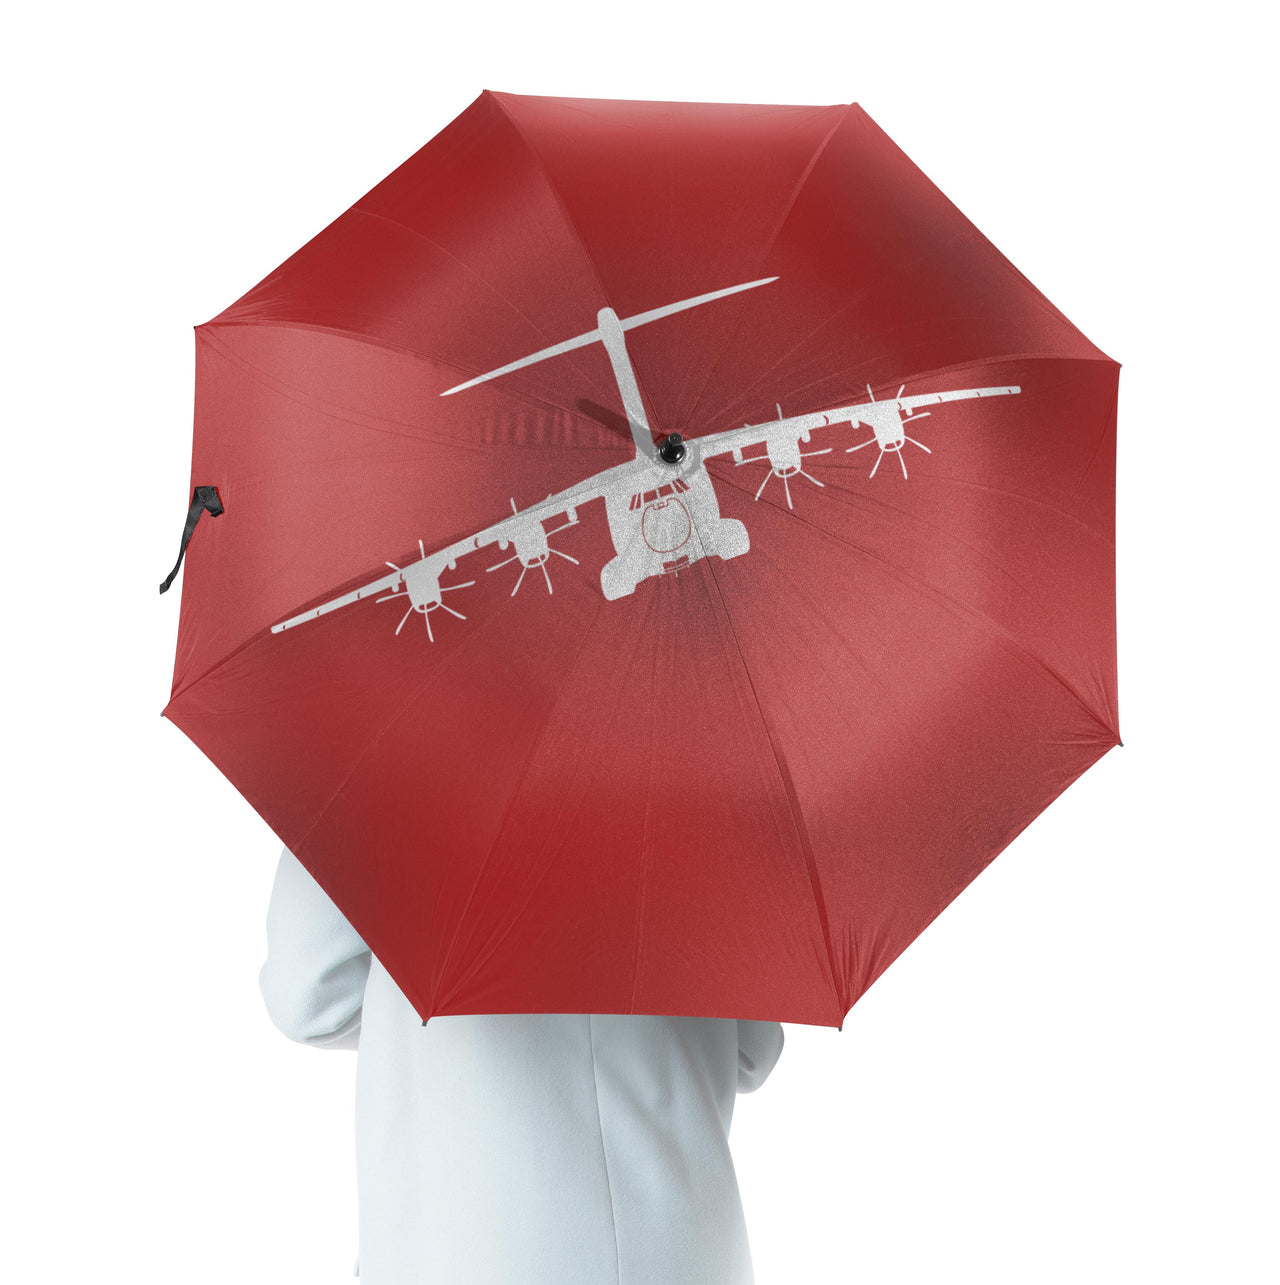 Airbus A400M Silhouette Designed Umbrella